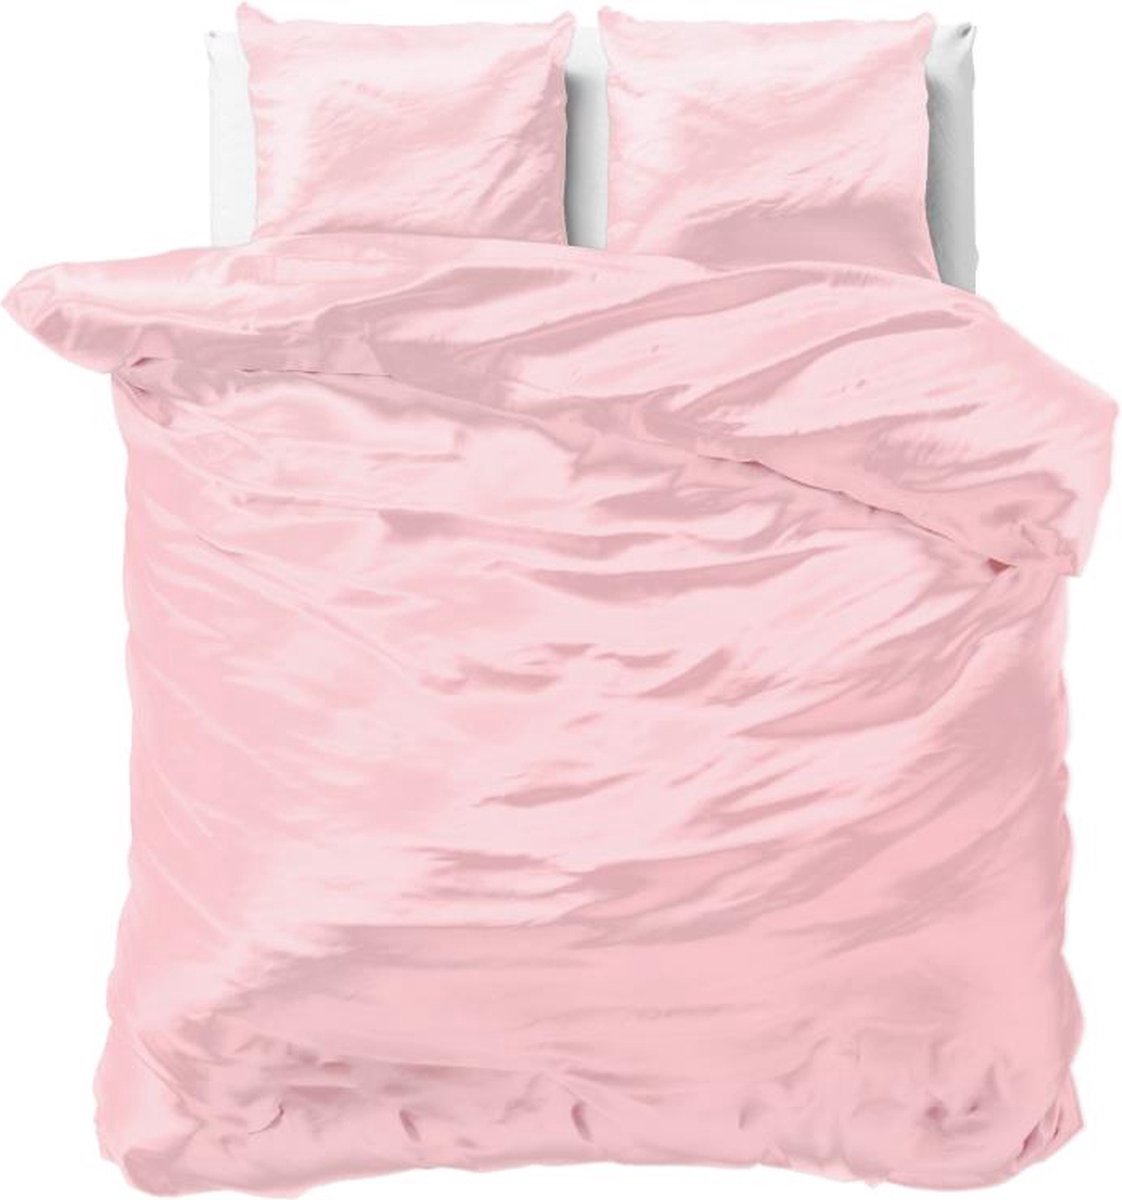 Luxe glans satijn dekbedovertrek uni roze - lits-jumeaux (240x200/220) - tegen acne, onzuiverheden en warrig haar - heerlijk zacht en soepel